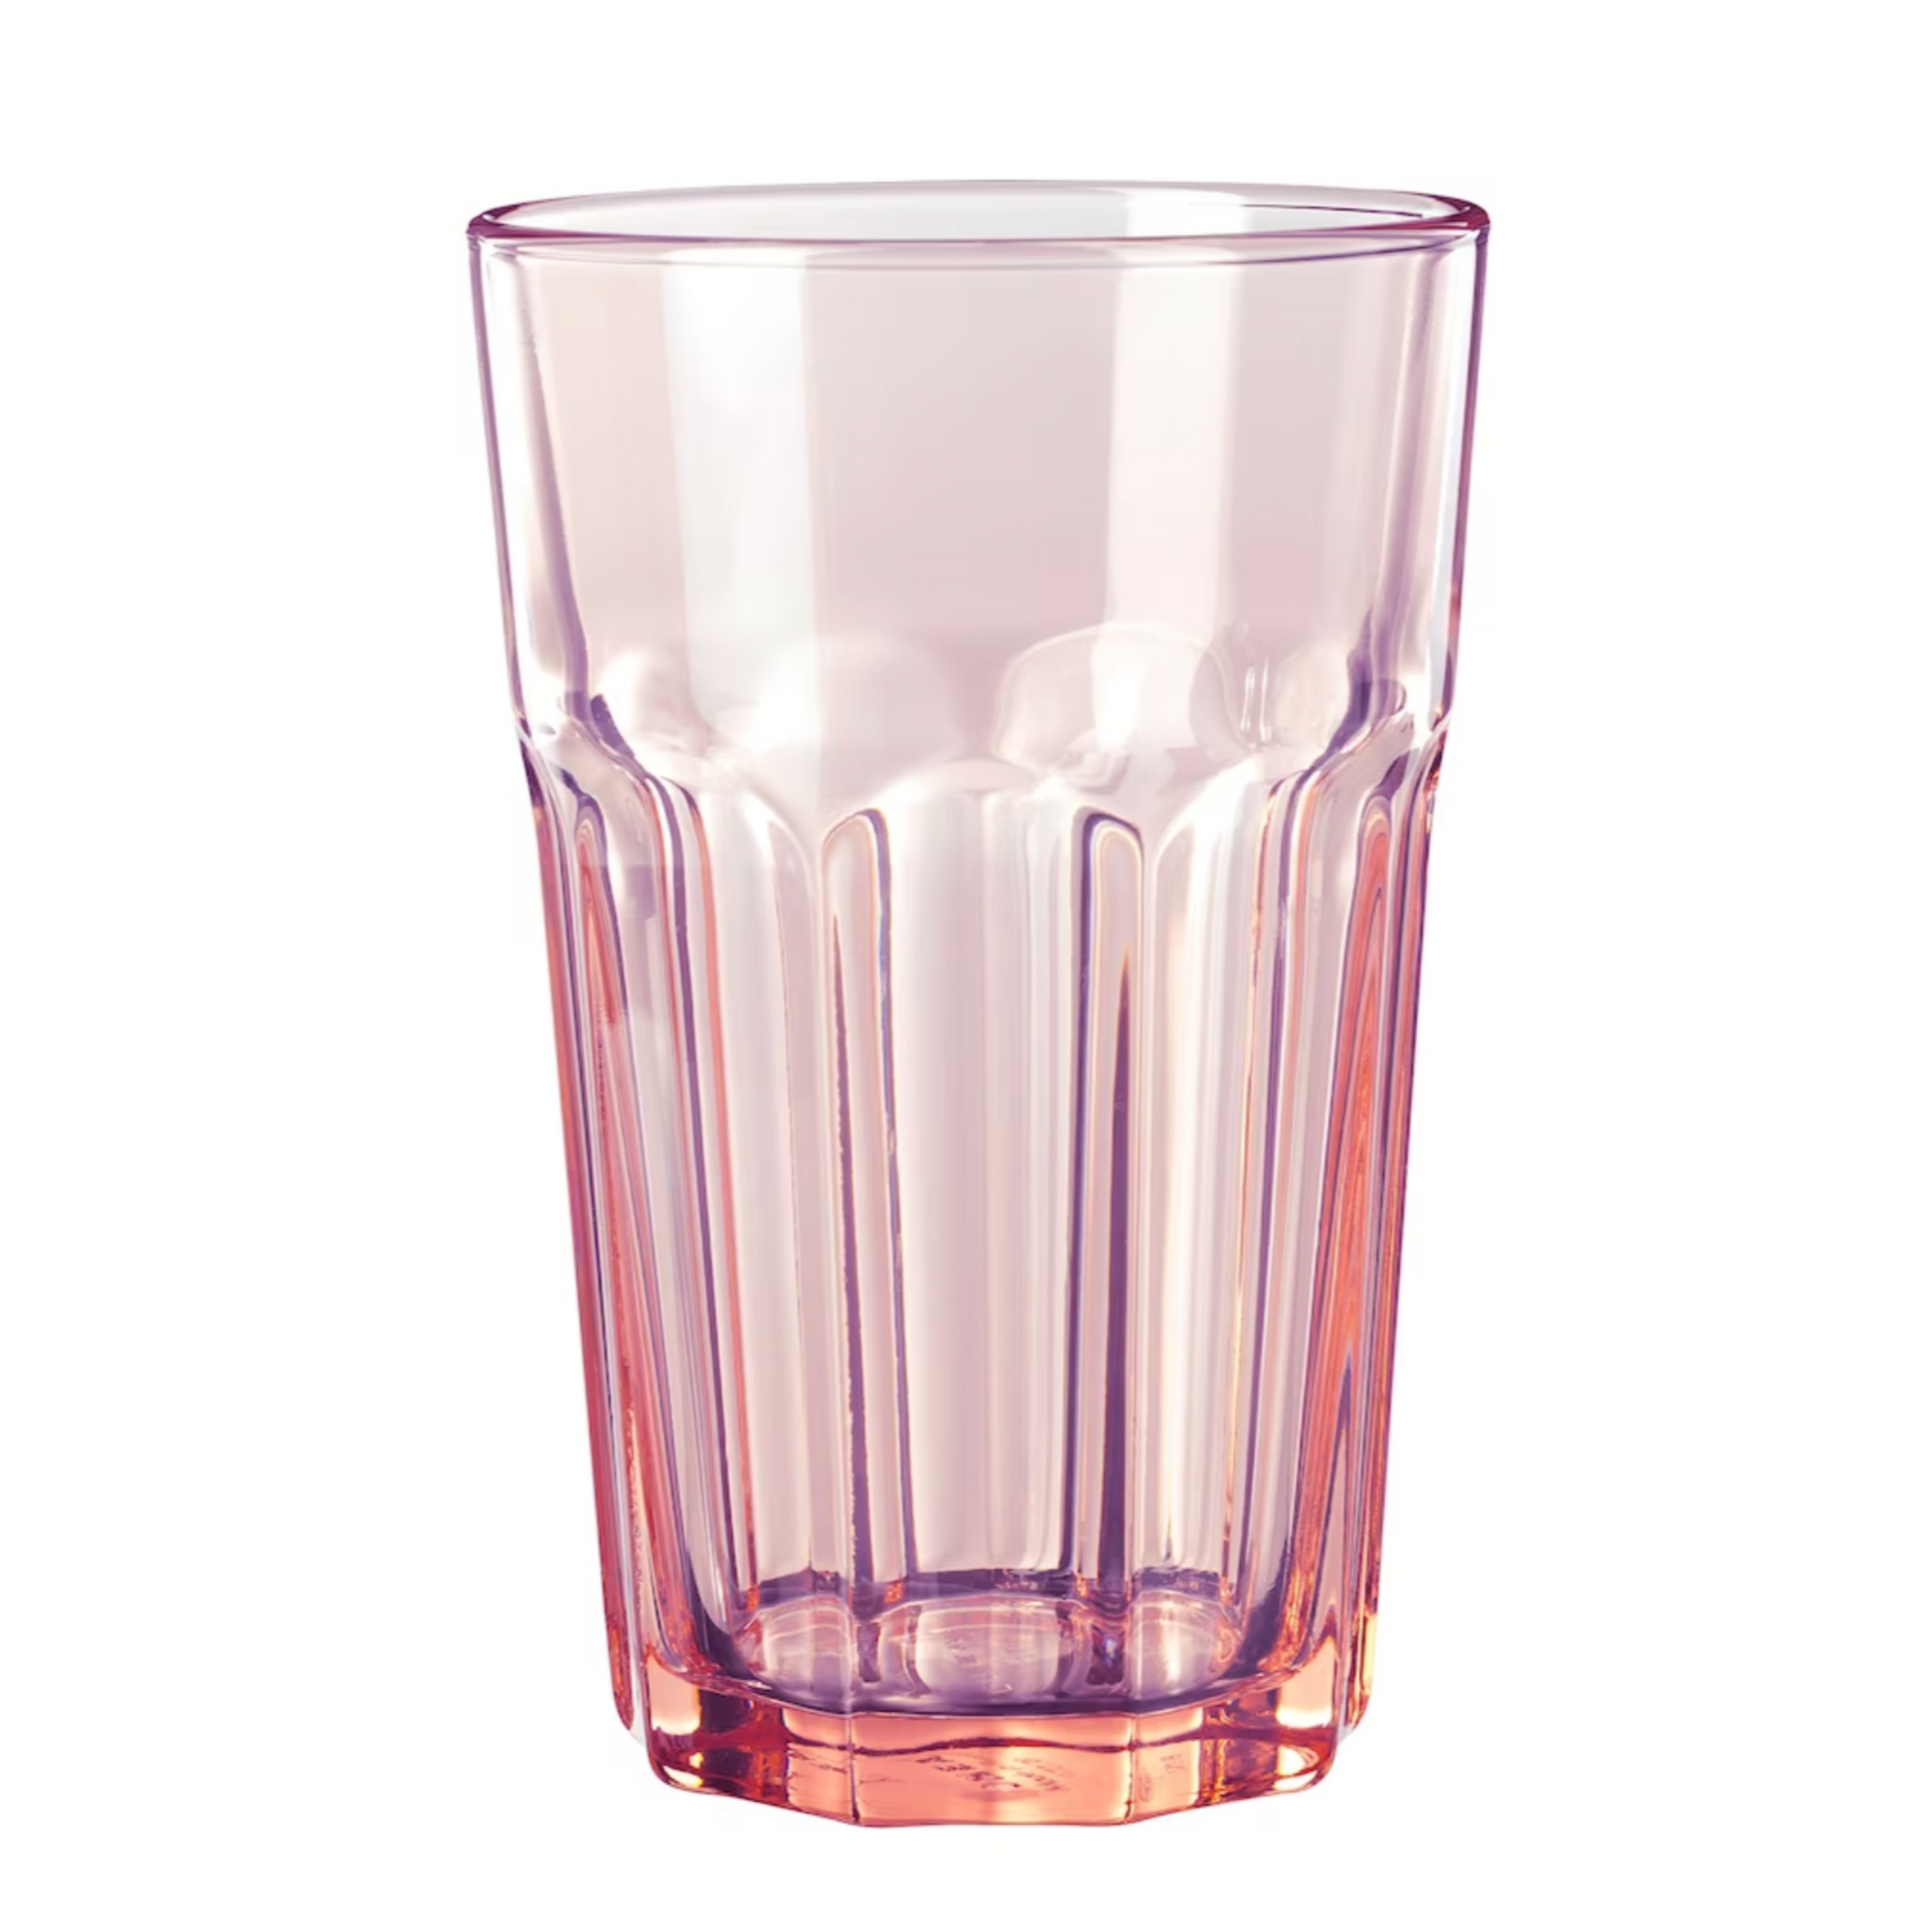 IKEA Pokal Drinking Glass, Rose (4623482683457)